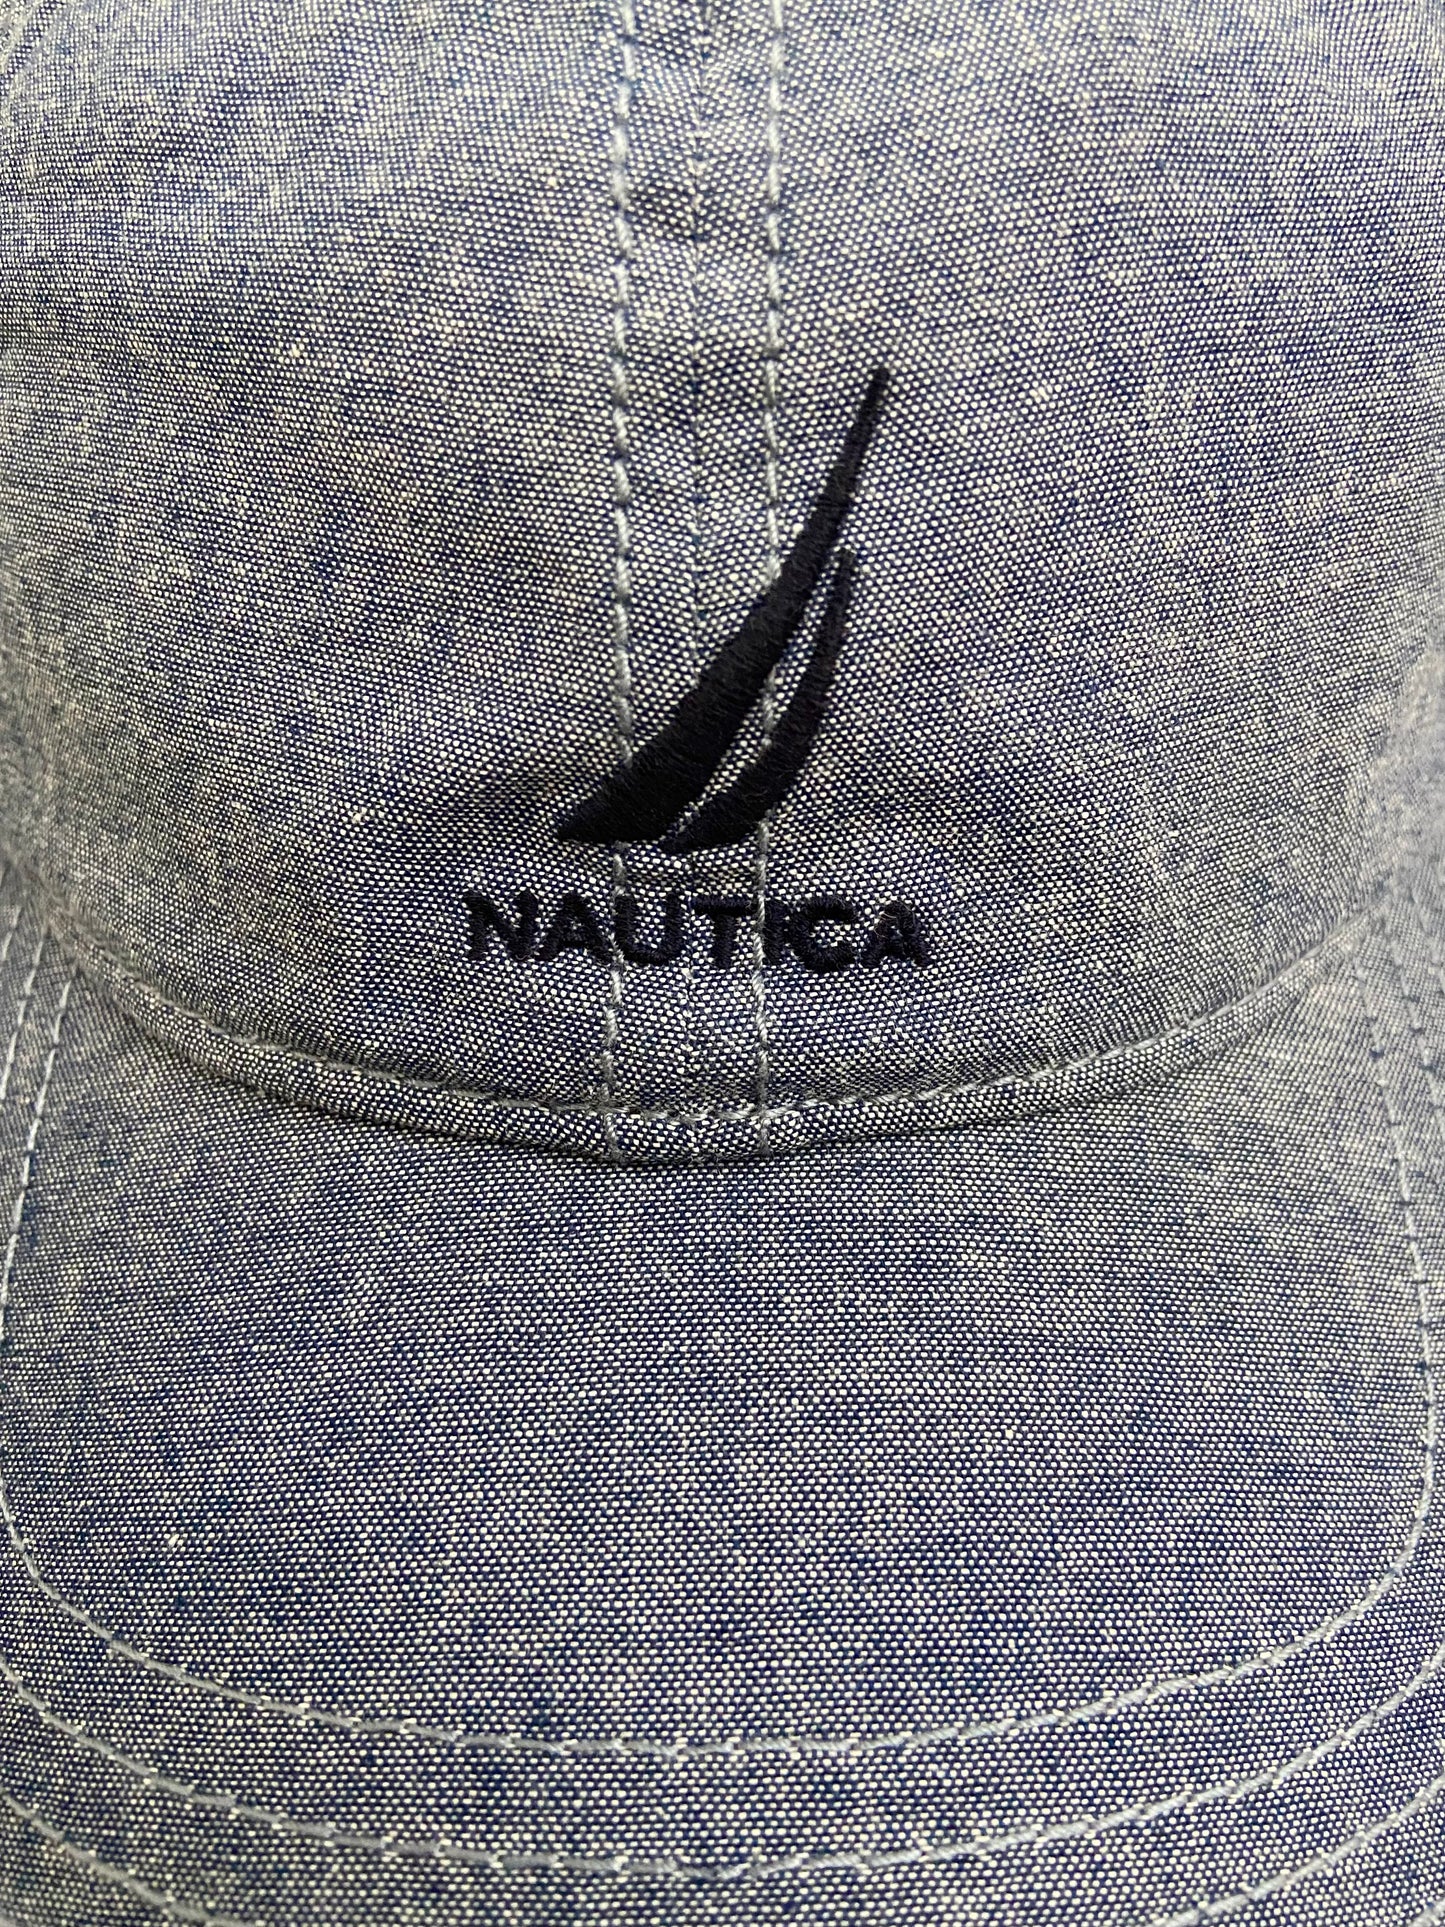 Gorra Nautica original en color azul jeans claro con diseño de logo y letra NAUTCA en color azul marino al frente y cuadro azul marino en la parte de e atrás con letras NS 83 en azul